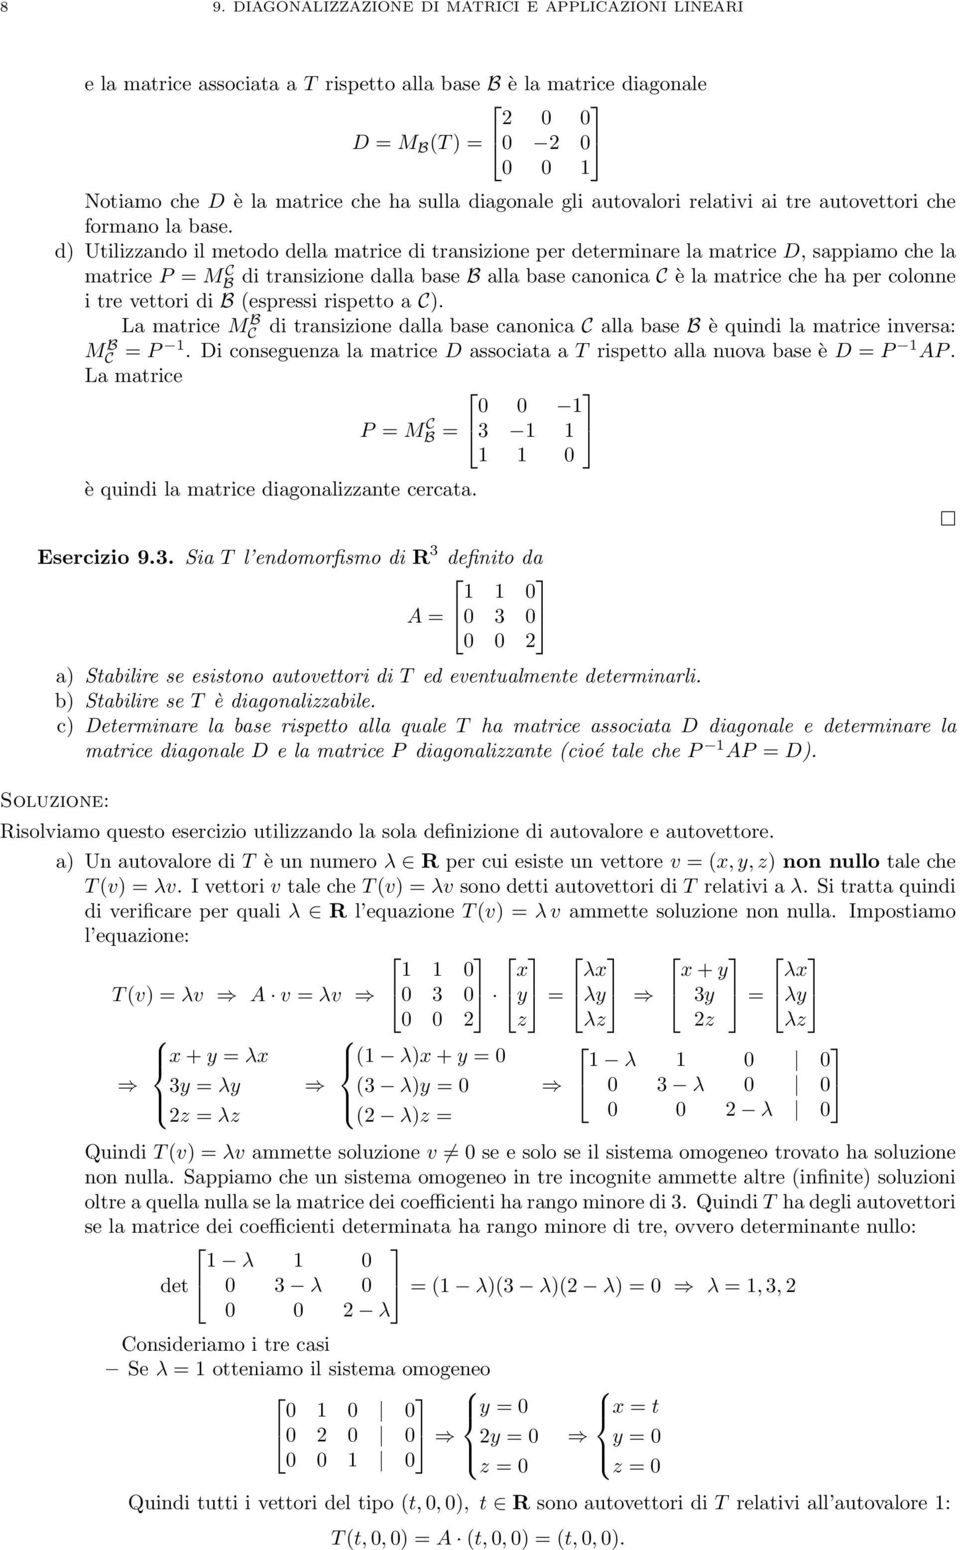 d) Utilizzando il metodo della matrice di transizione per determinare la matrice D, sappiamo che la matrice P = MB C di transizione dalla base B alla base canonica C è la matrice che ha per colonne i